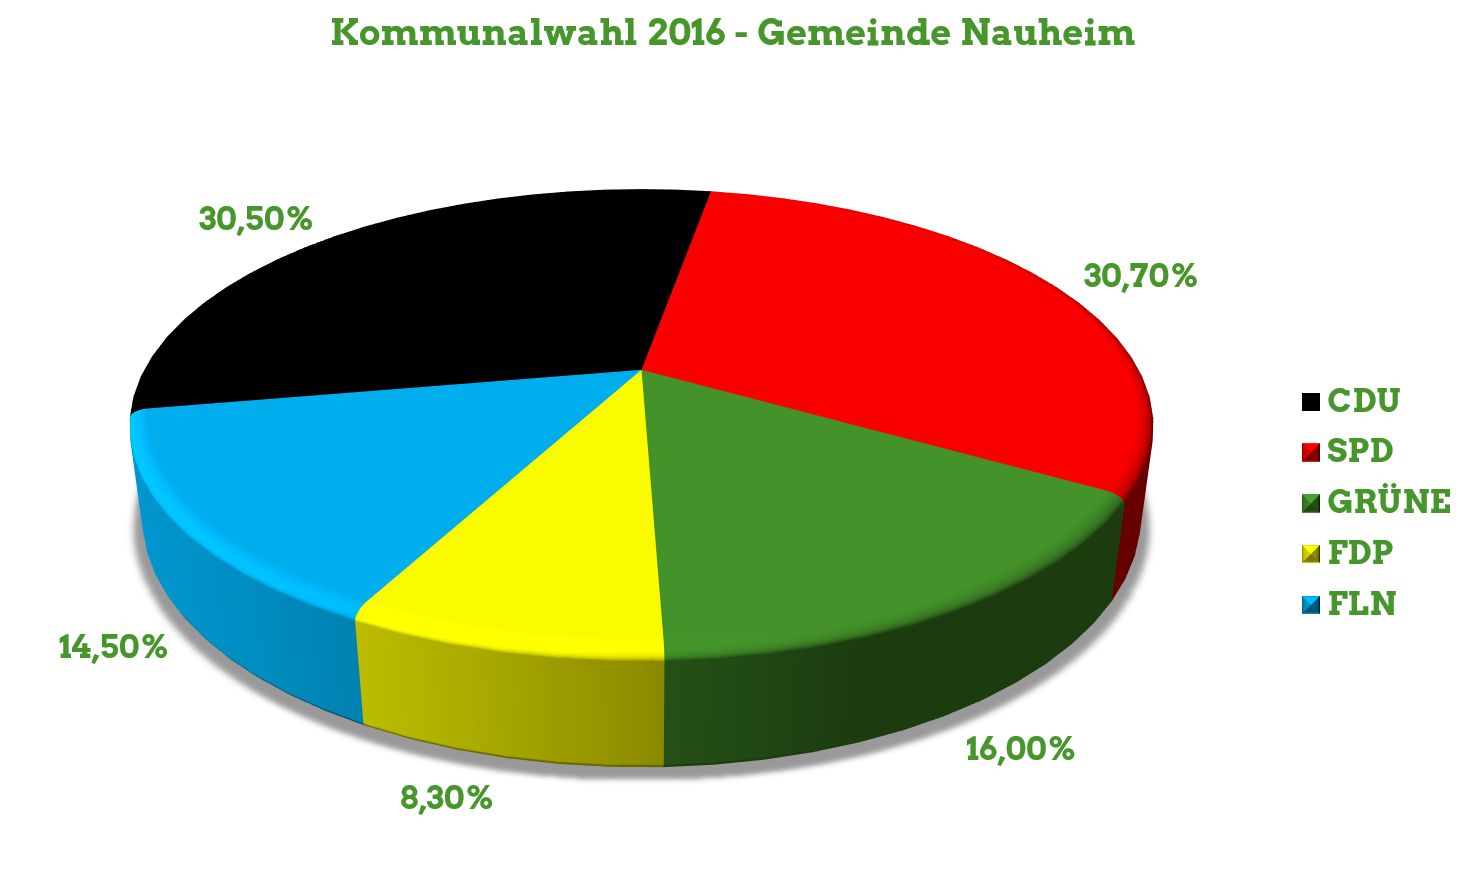 Endergebnis der Kommunalwahl 2016 für die Gemeinde Nauheim